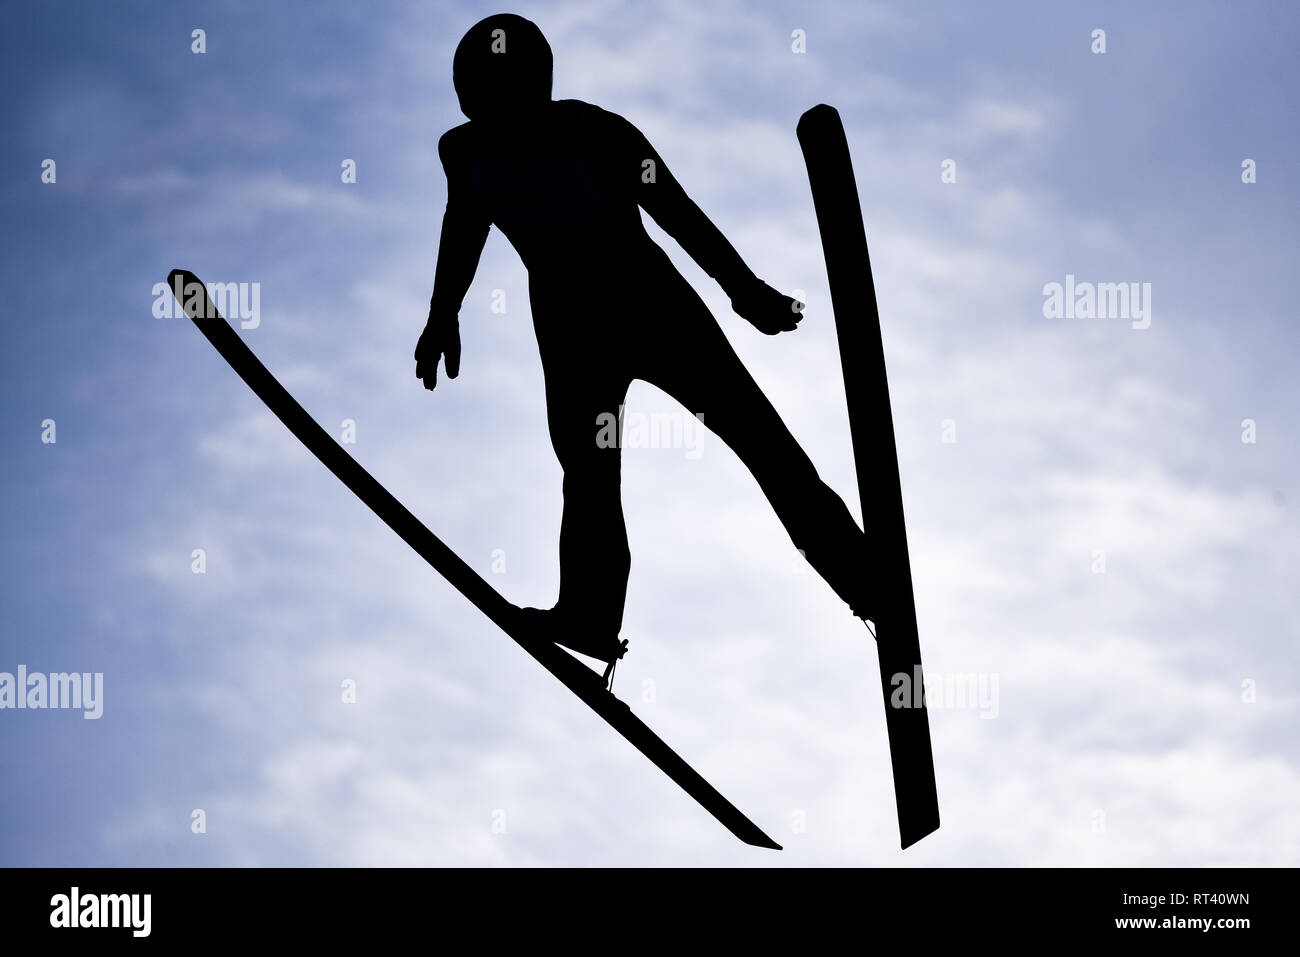 Seefeld, Austria, 26 de febrero. 2019. Saltadores de esquí silueteado durante el campeonato mundial de esquí nórdico. © John Lazenby/Alamy Live News. Foto de stock